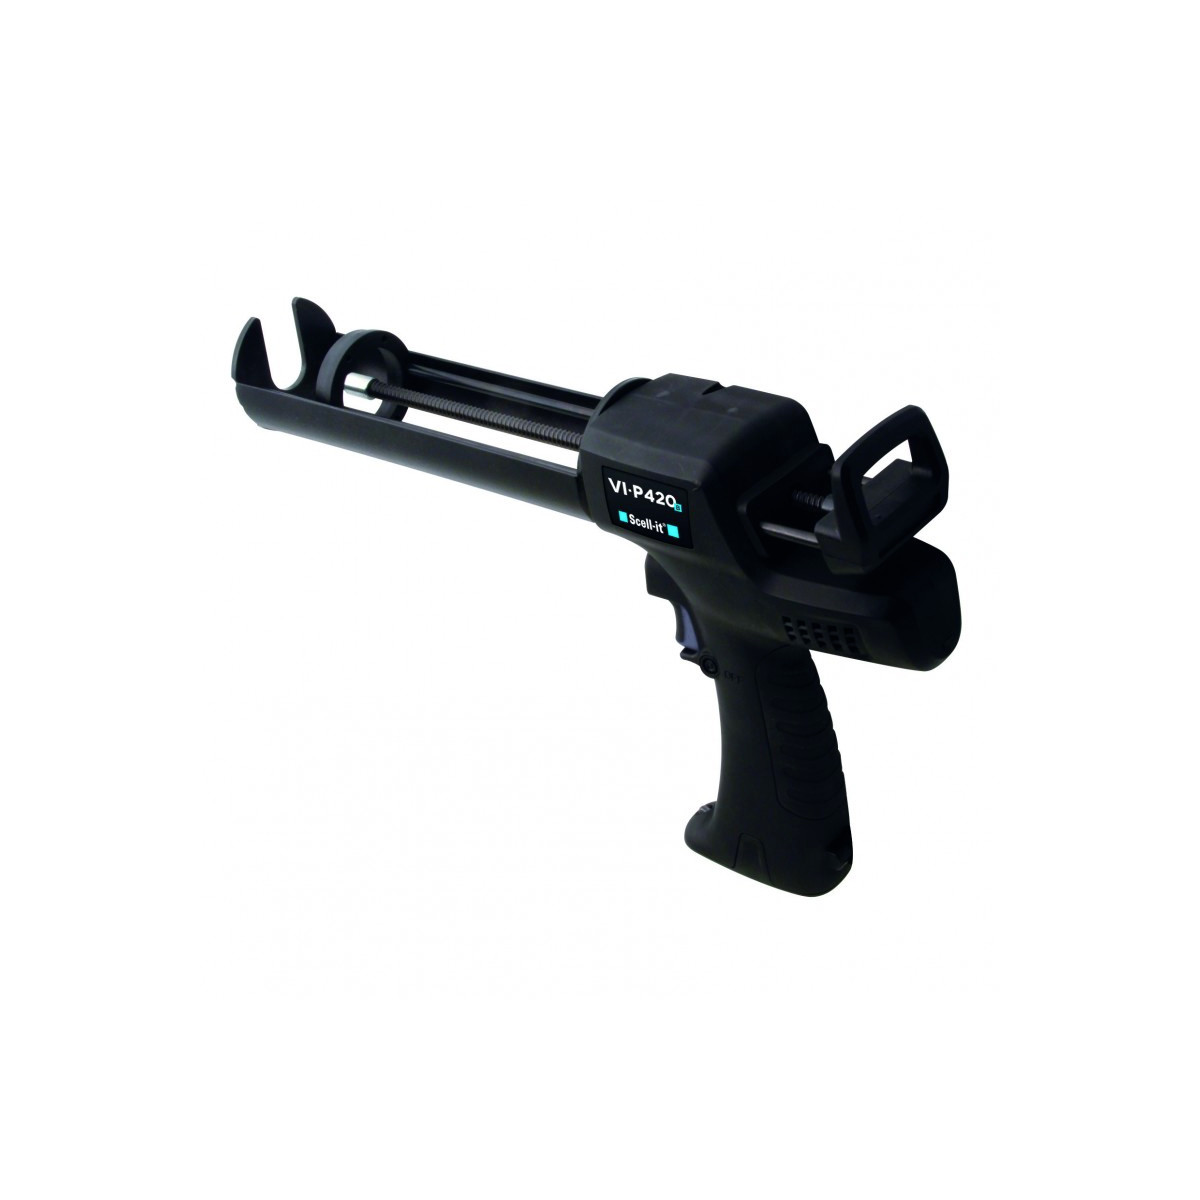 SYLEX - Pistolet Mastic Sylex Pro 1 scellement chimique - Pistolet Pro 1  Extra fort à double tige spécial cartouches de scell - Livraison  gratuite dès 120€